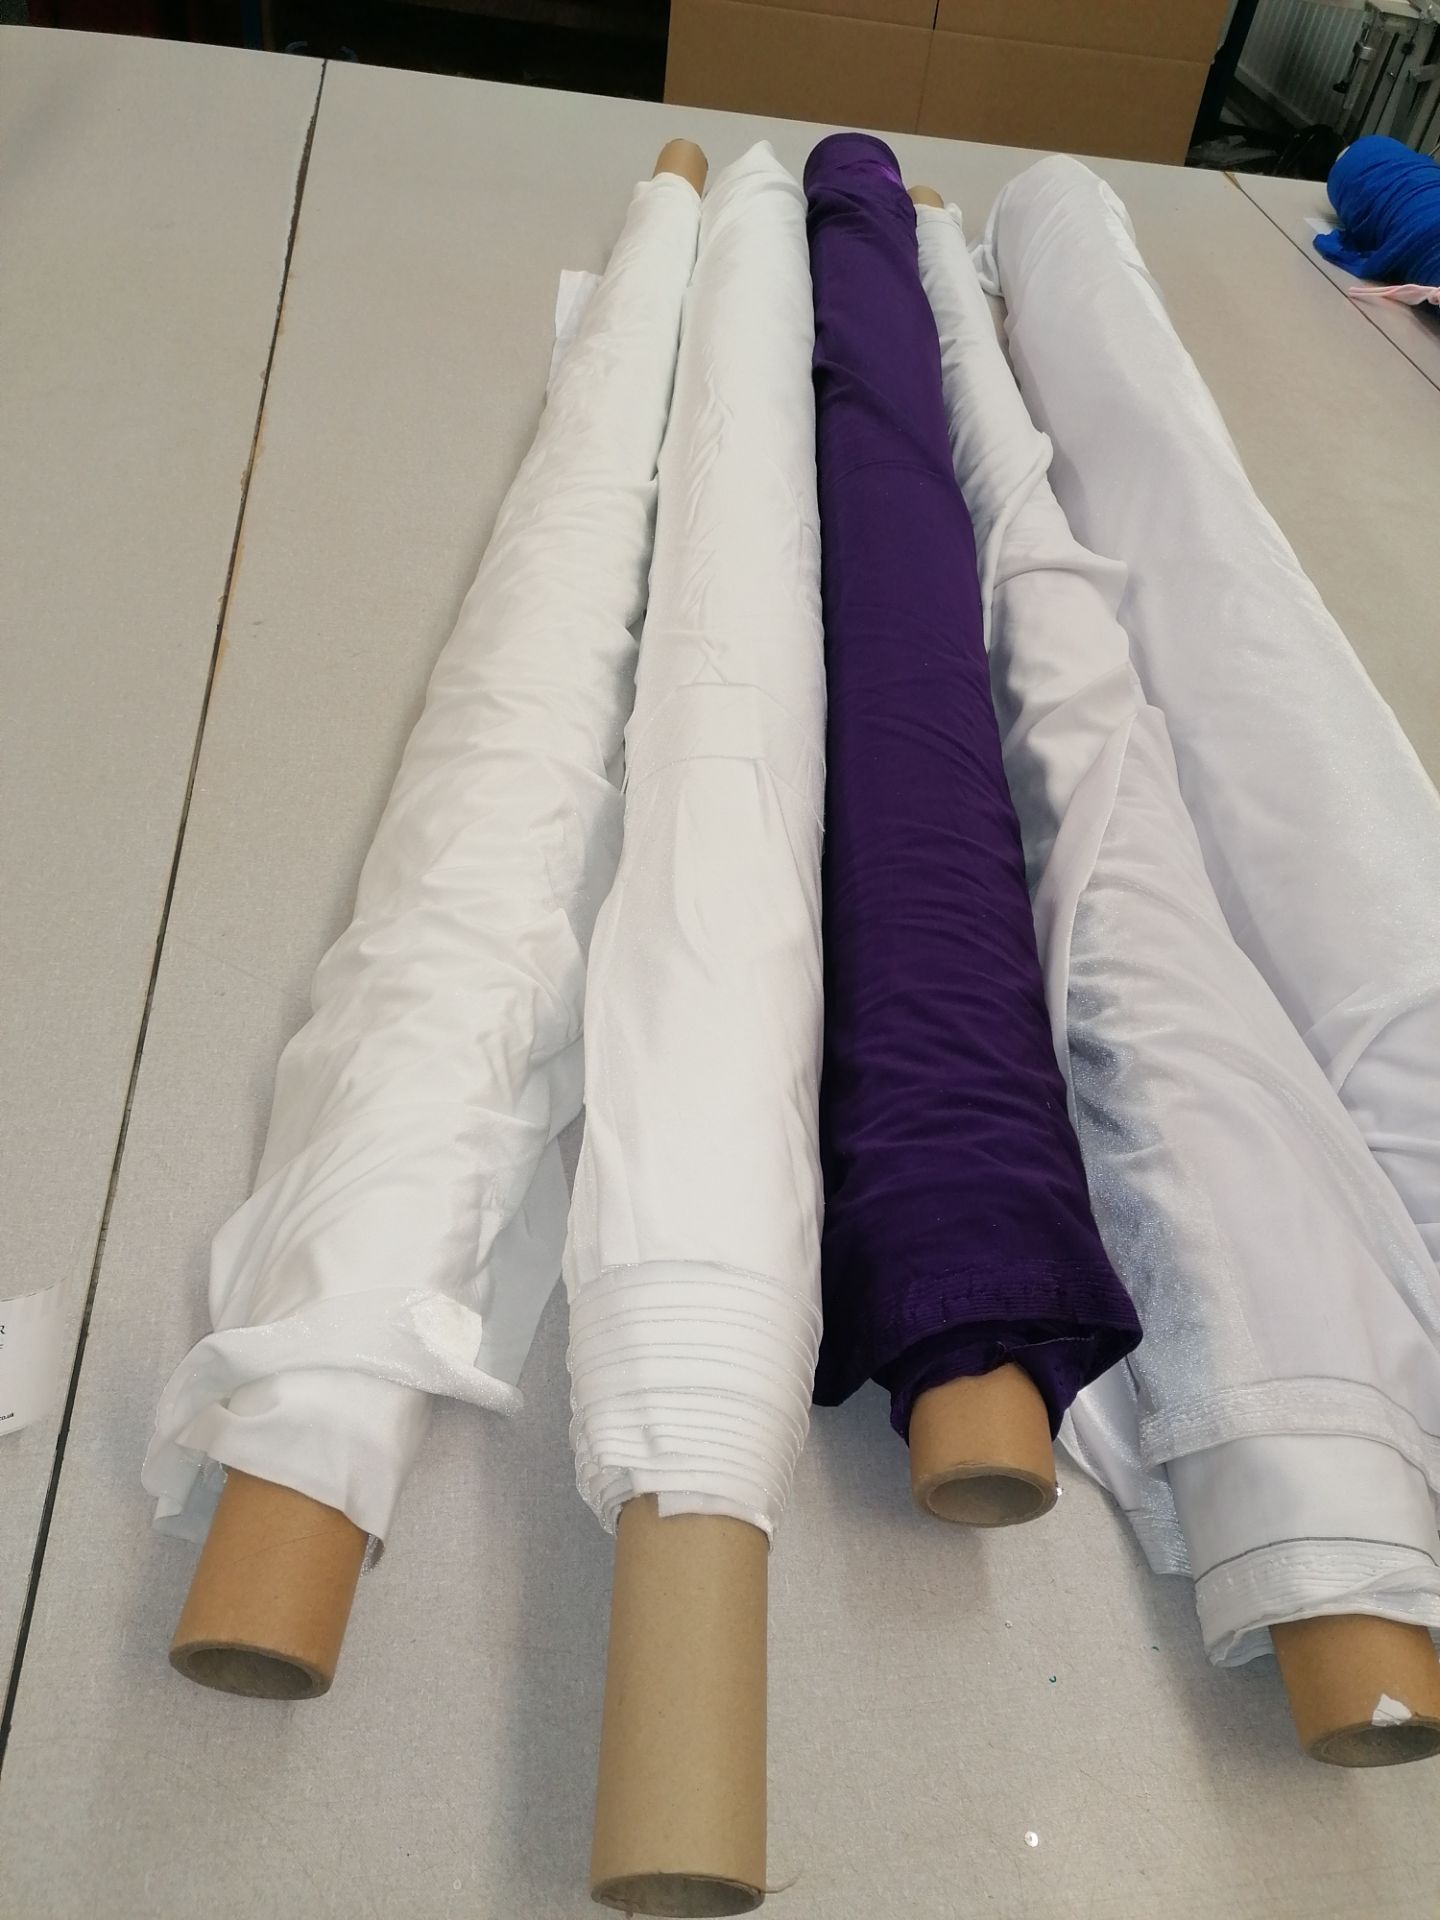 5 x Rolls stretch valour fabric. Estimated 50m RRP £8-10 per meter